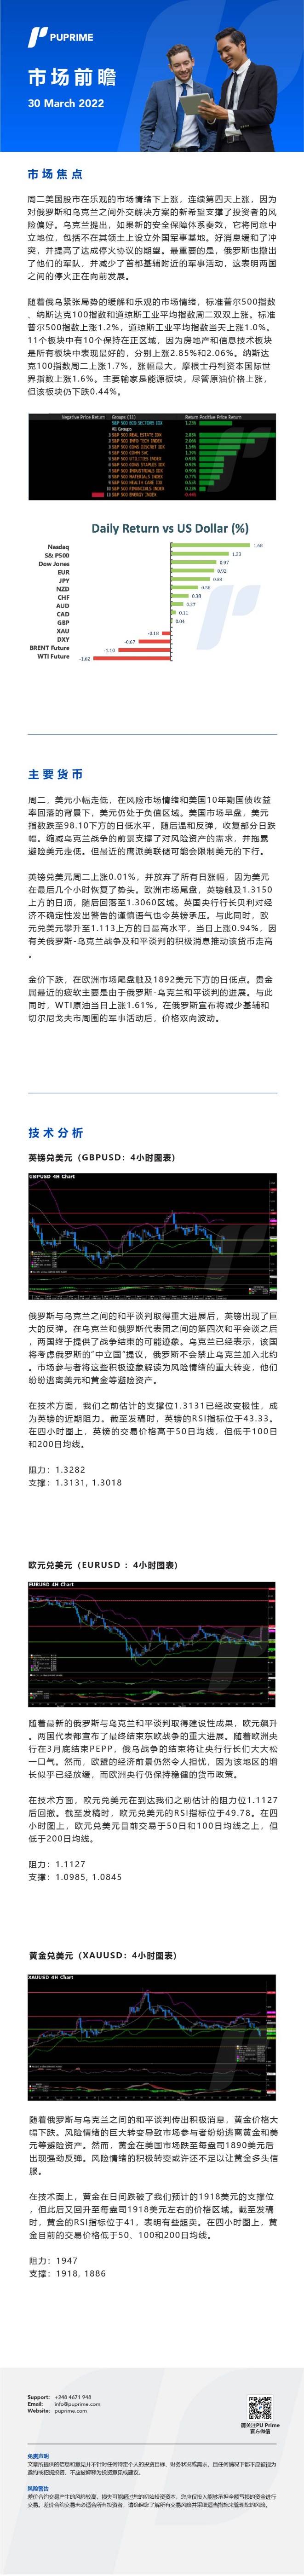 30032022 Daily Market Analysis_ _CHN.jpg